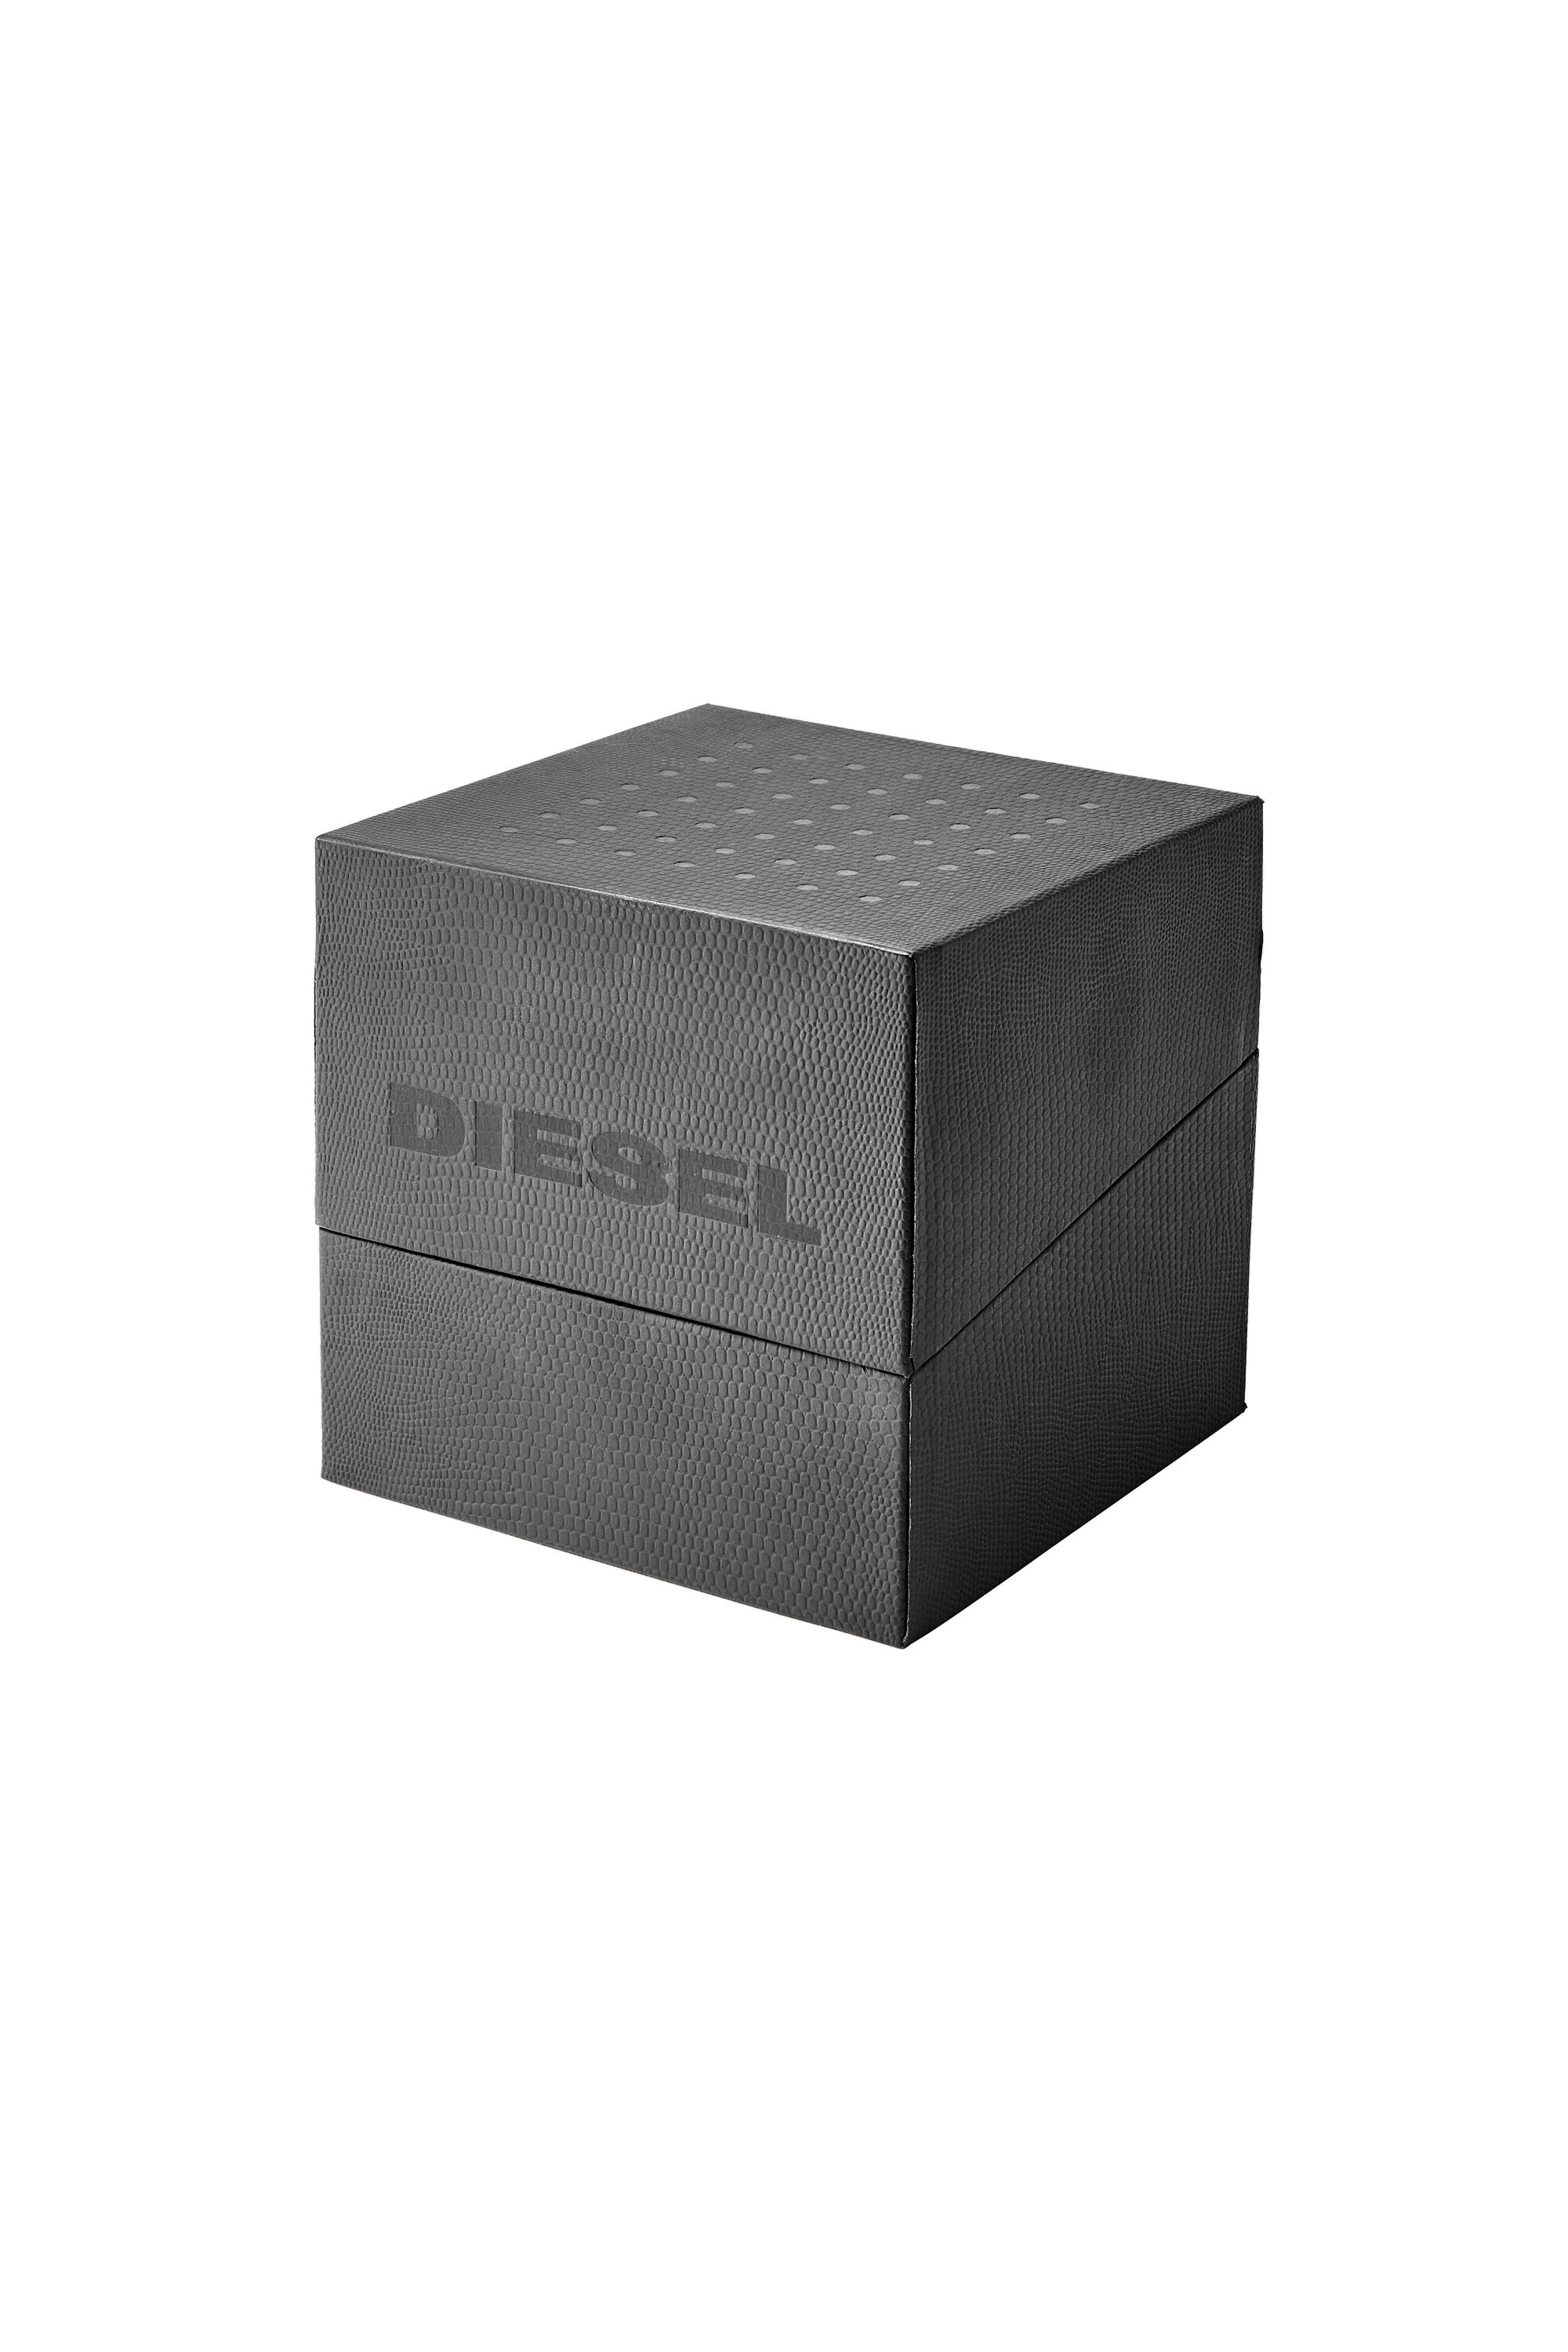 Diesel - DZ1902, Gris - Image 5